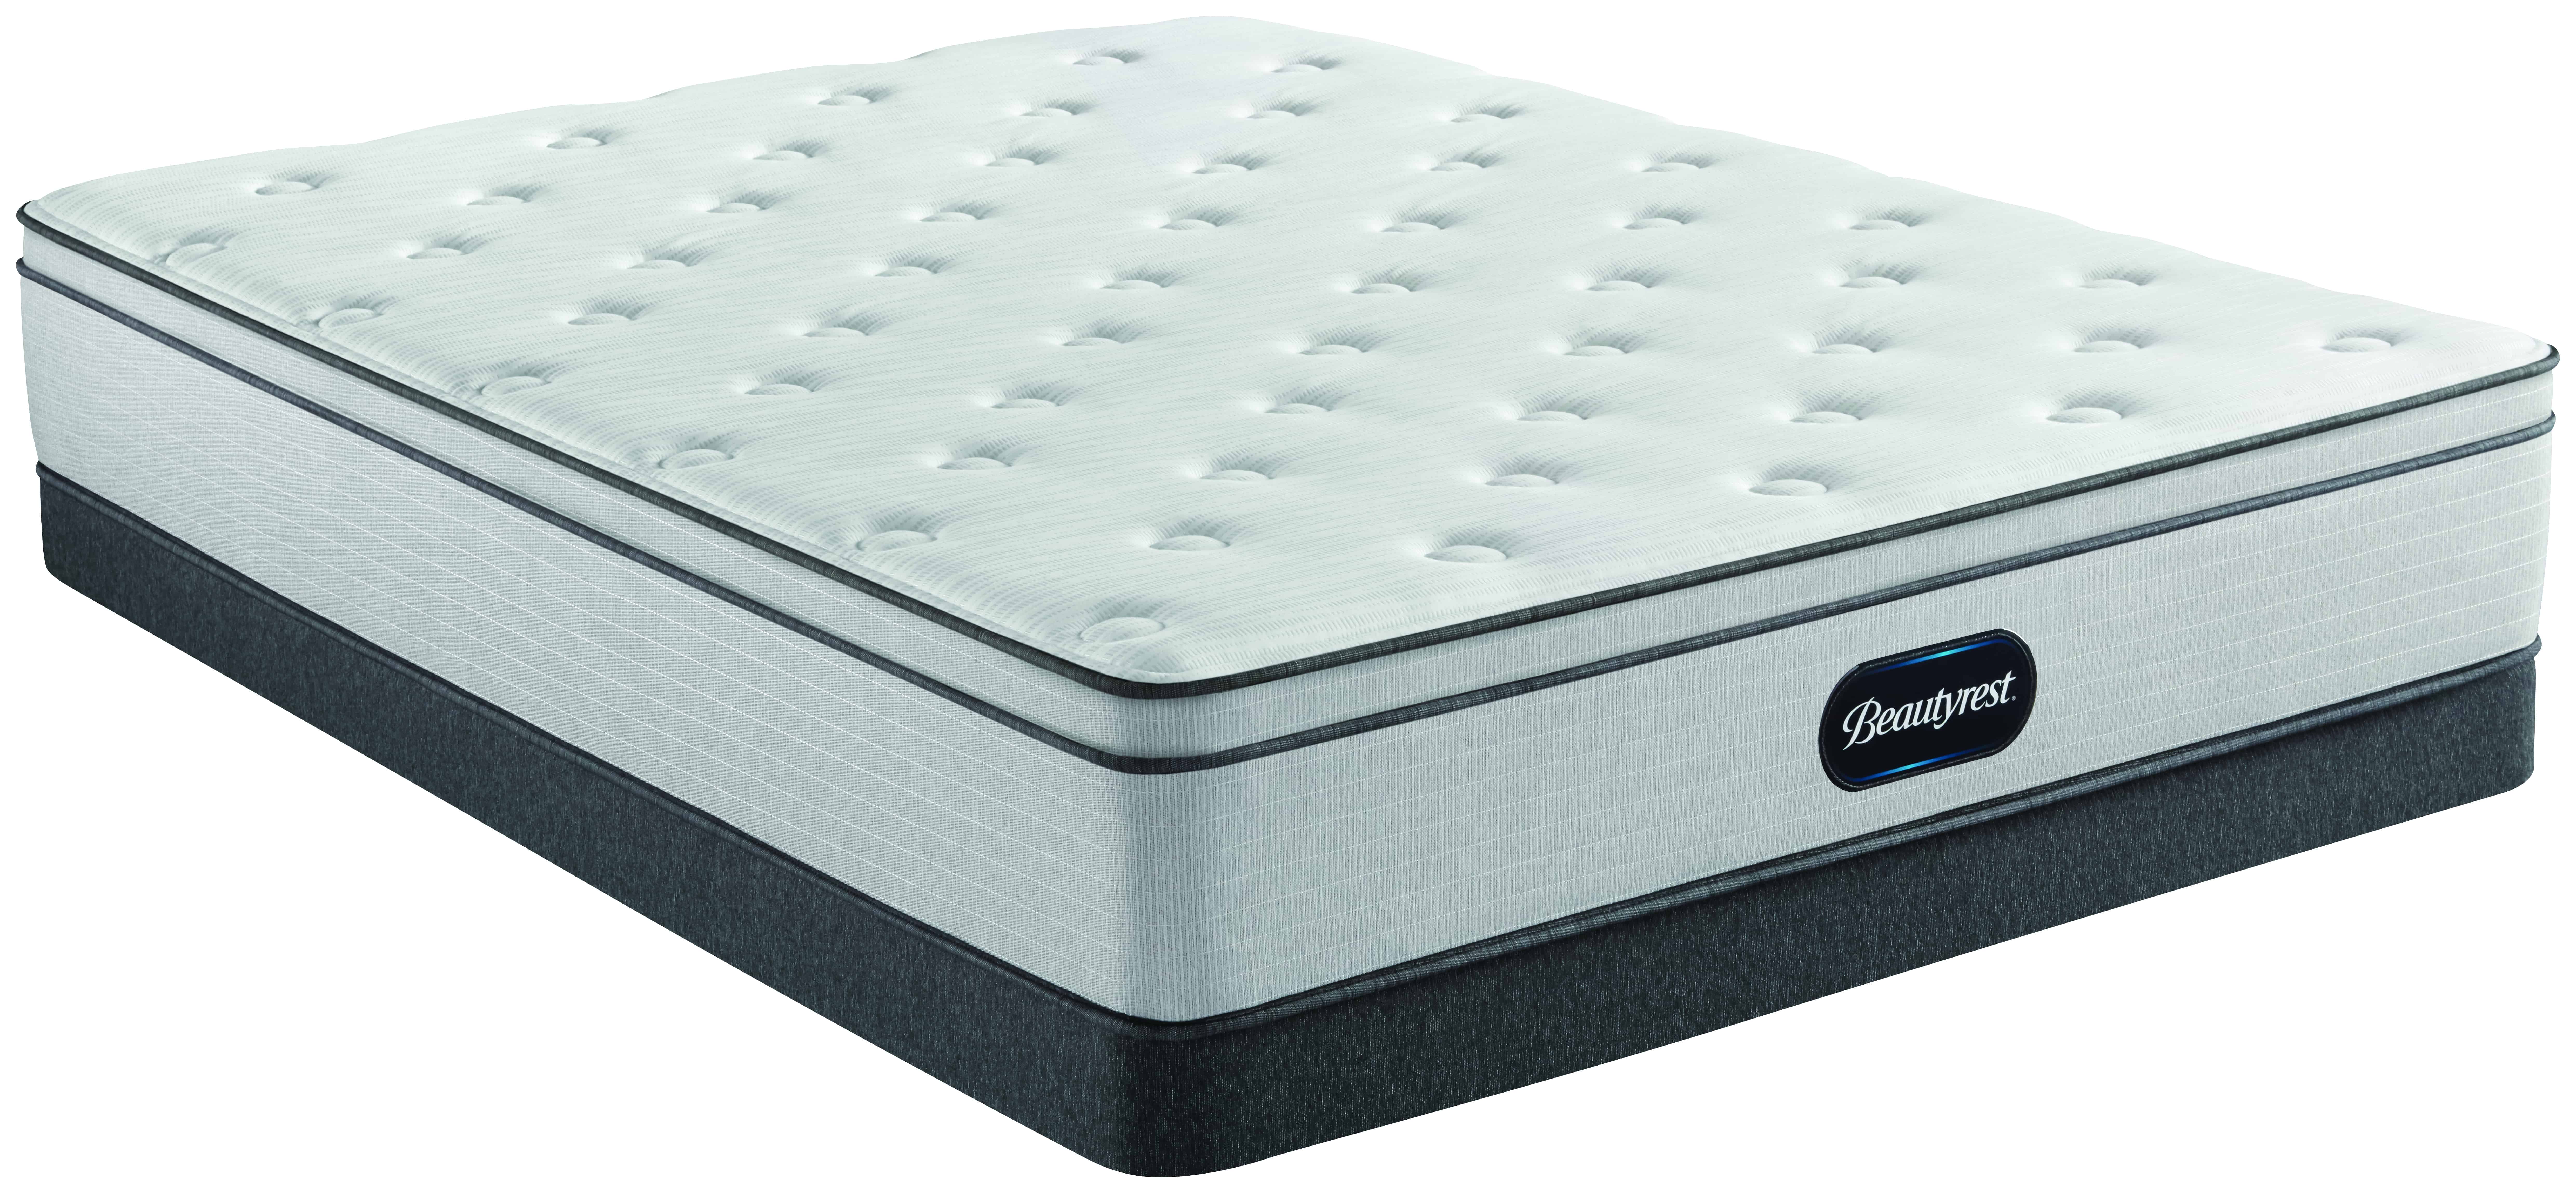 beautyrest 800 mattress reviews